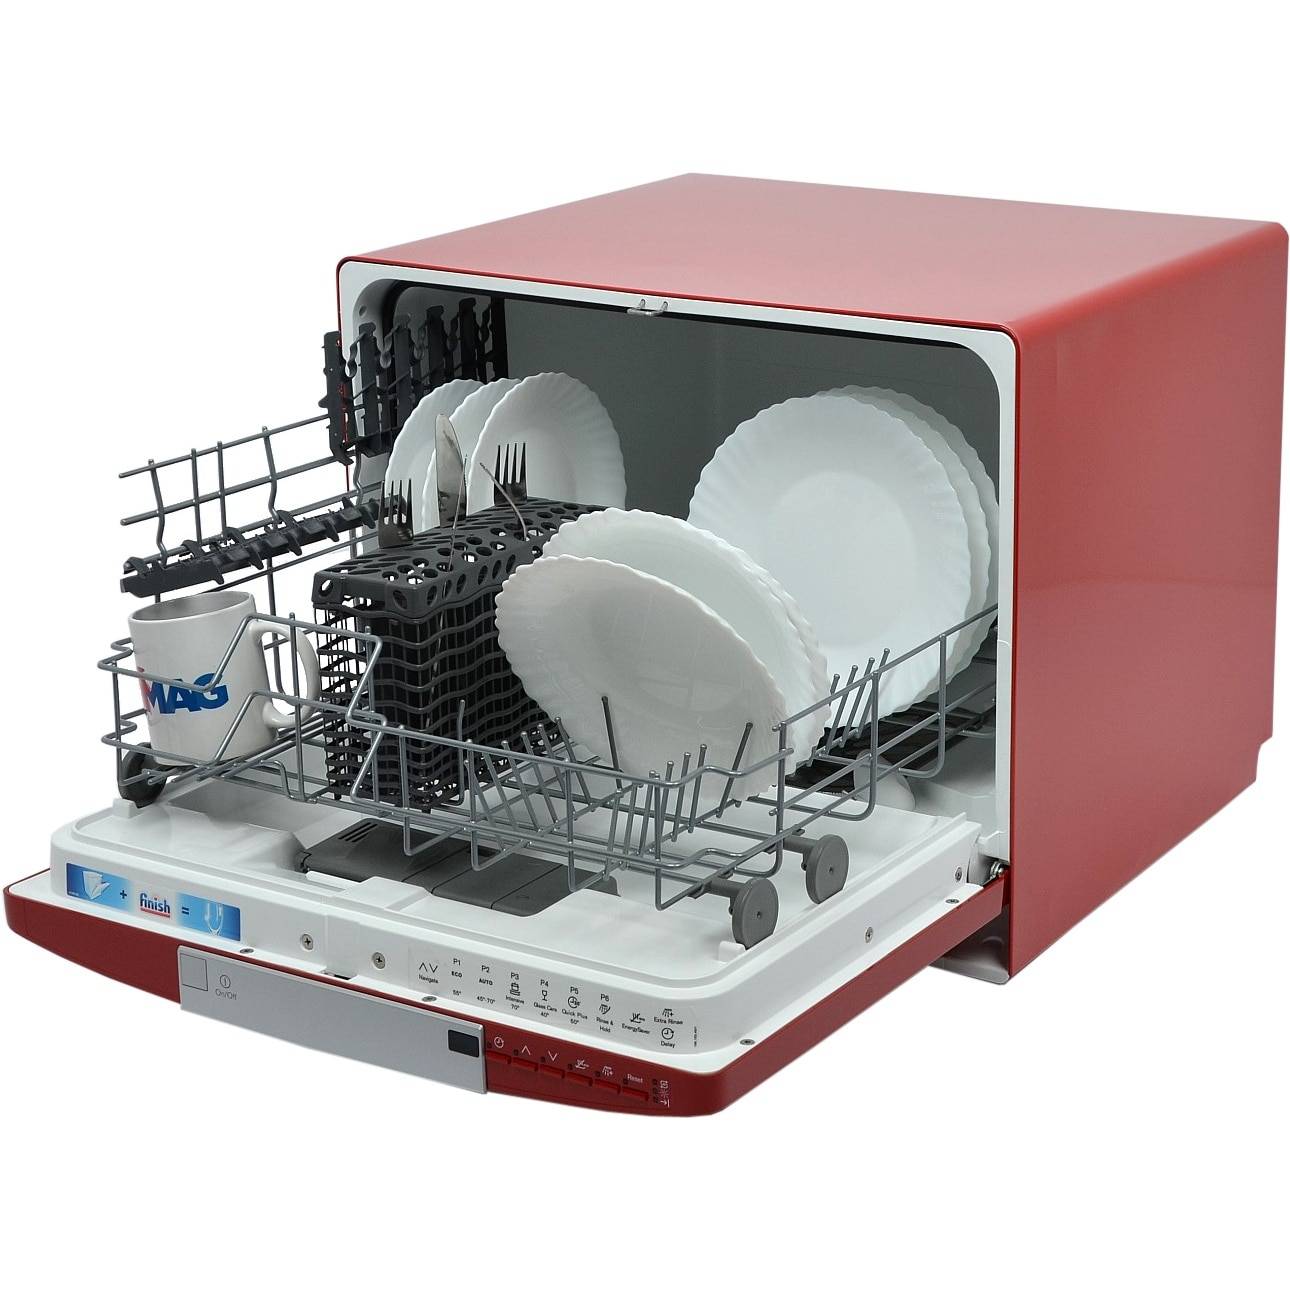 Посудомоечная машина бош, сименс, электролюкс - что лучше?